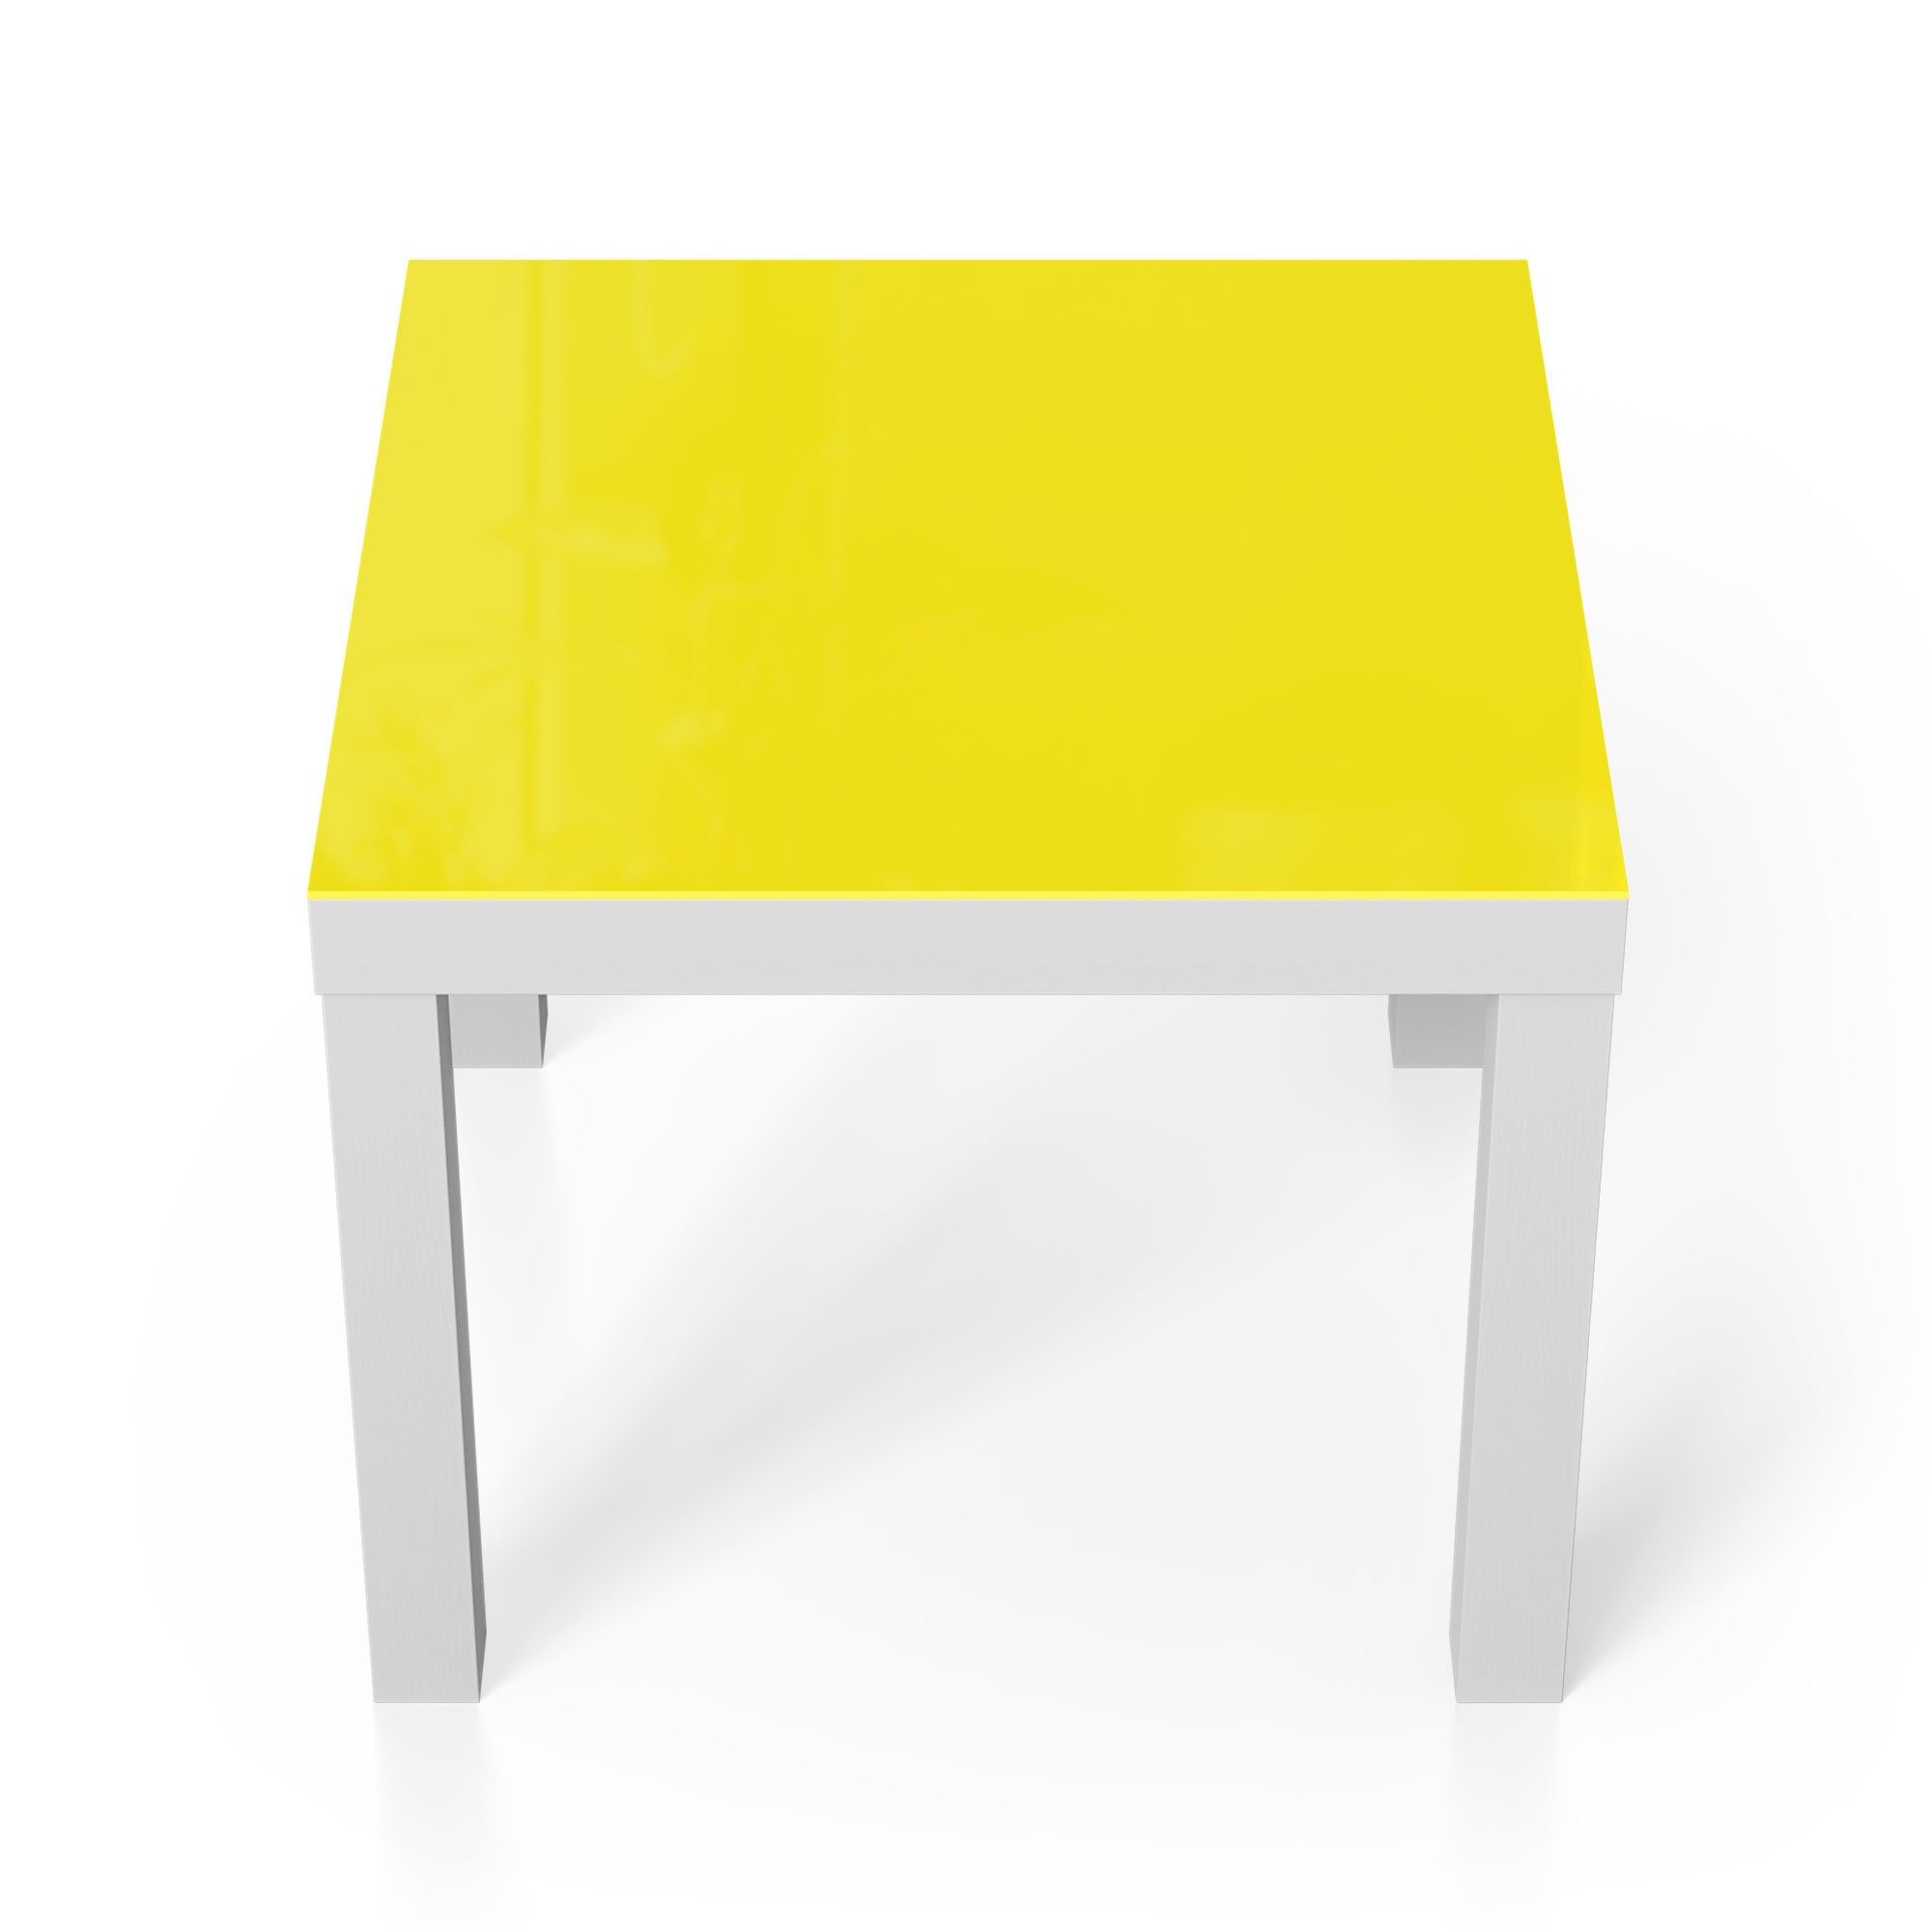 Glastisch DEQORI Couchtisch - Beistelltisch modern Weiß Glas 'Unifarben Gelb',